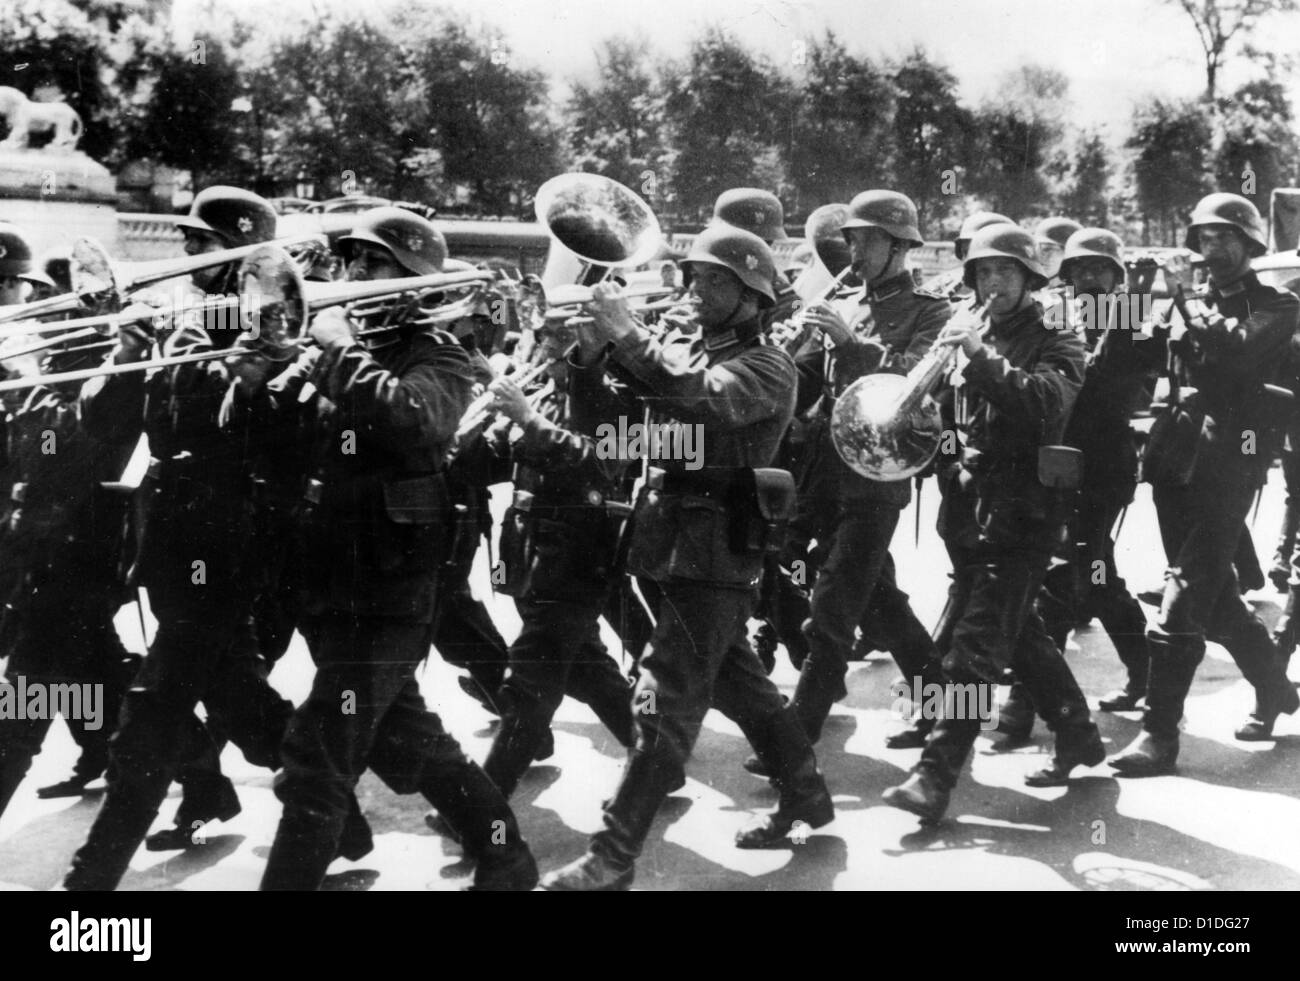 La banda militare della compagnia di guardia tedesca marcia lungo l'Arco di Trionfo su Place de la Concorde a Parigi, in Francia, nel luglio 1940. Fotoarchiv für Zeitgeschichte Foto Stock